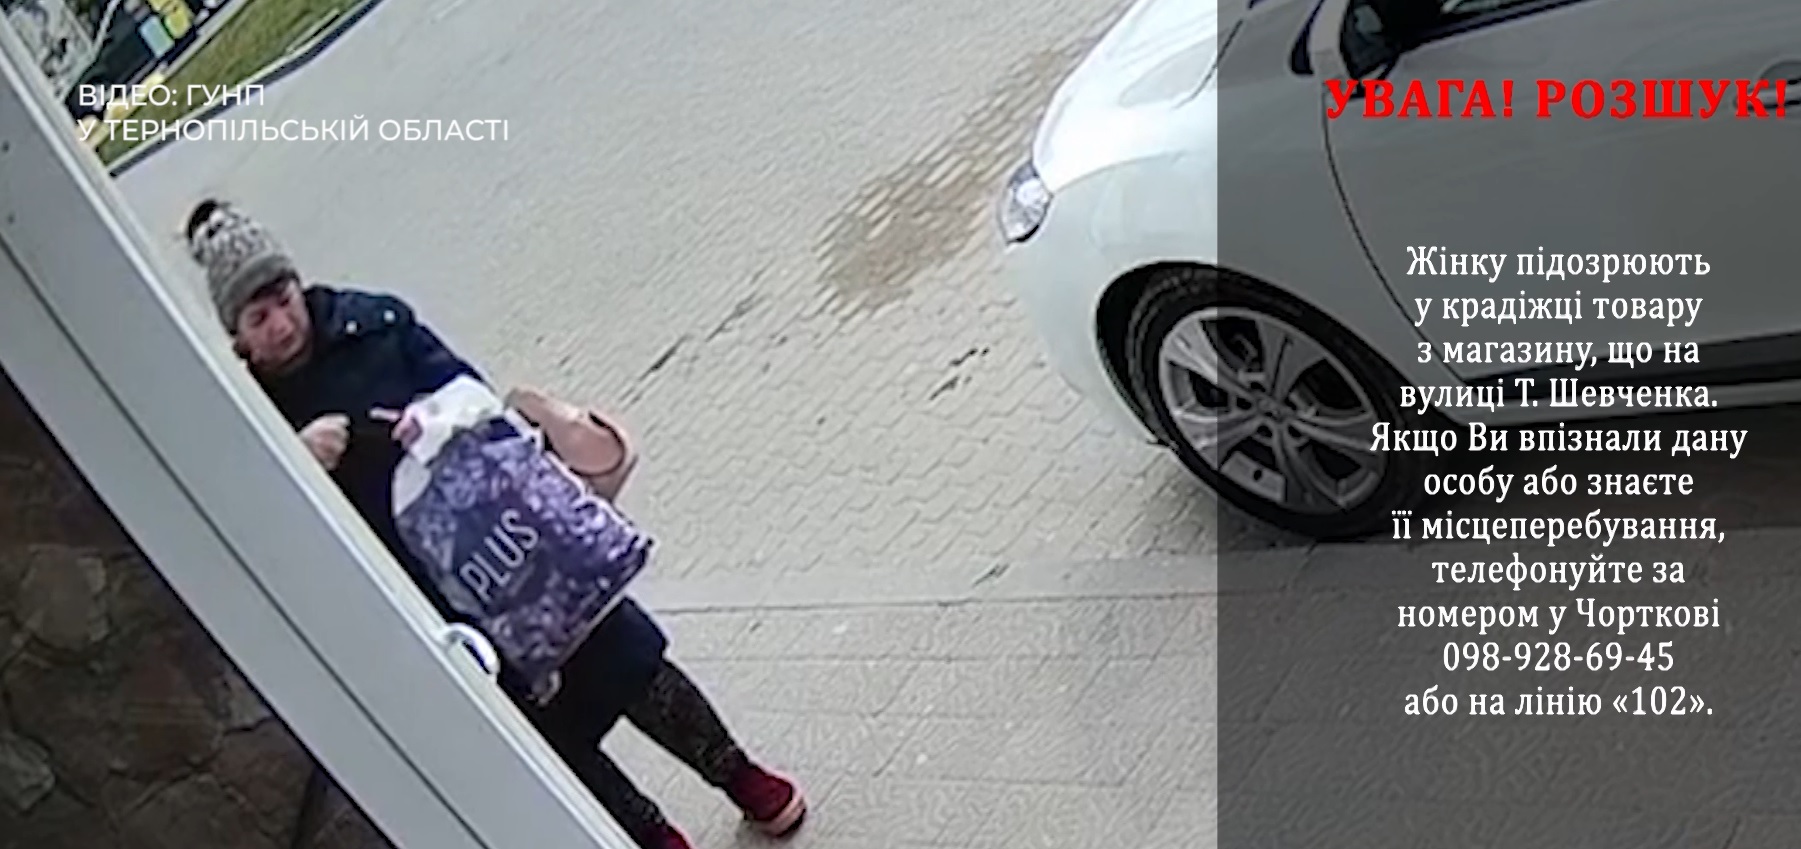 Поліція розшукує жінку, яка обікрала магазин у Чорткові